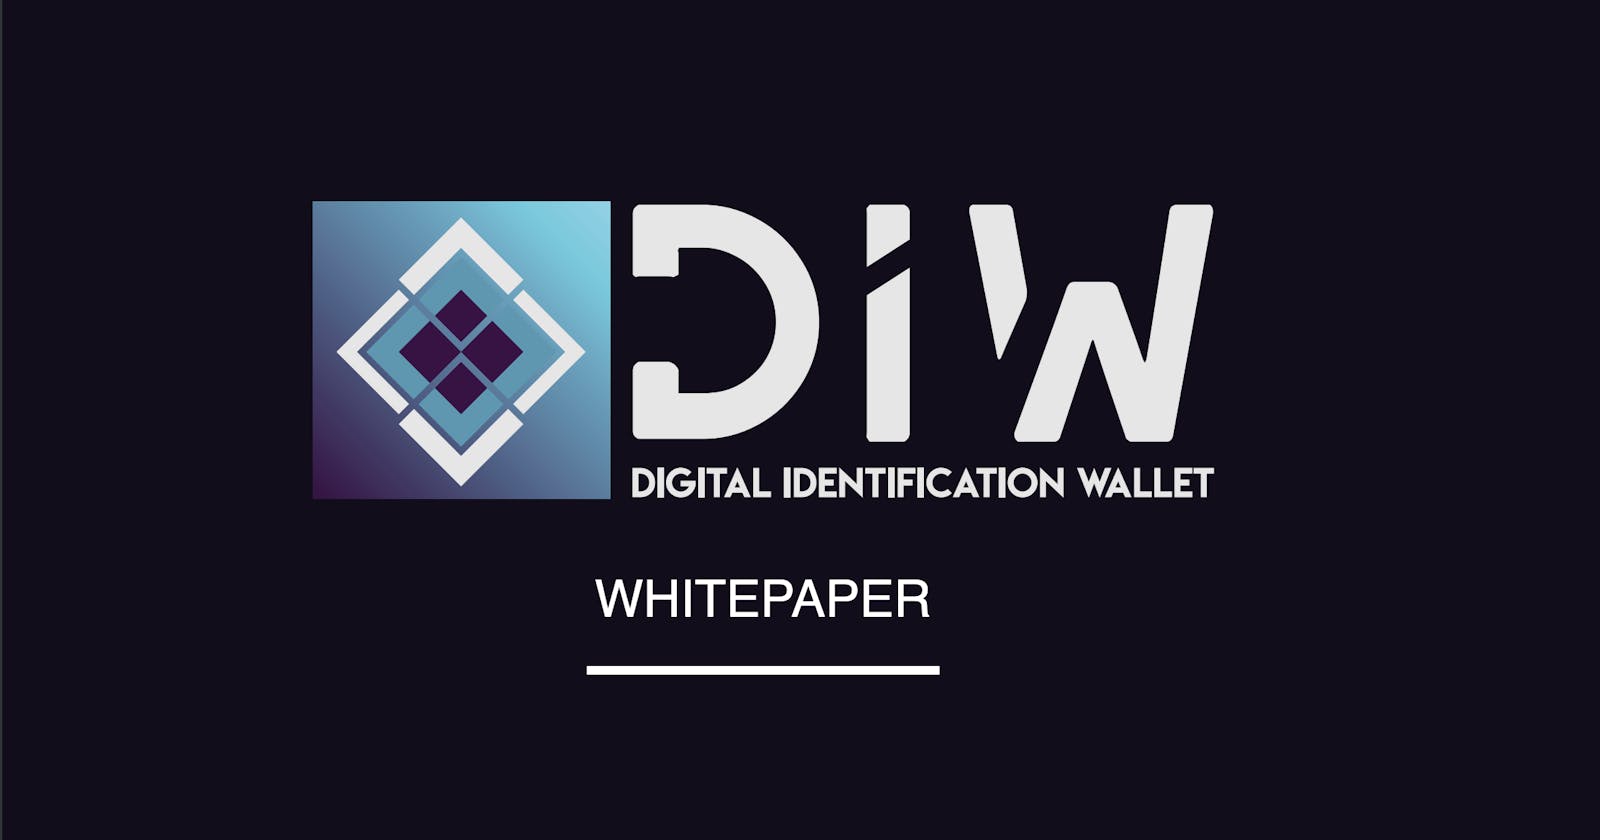 DIW - Digital Identification Wallet